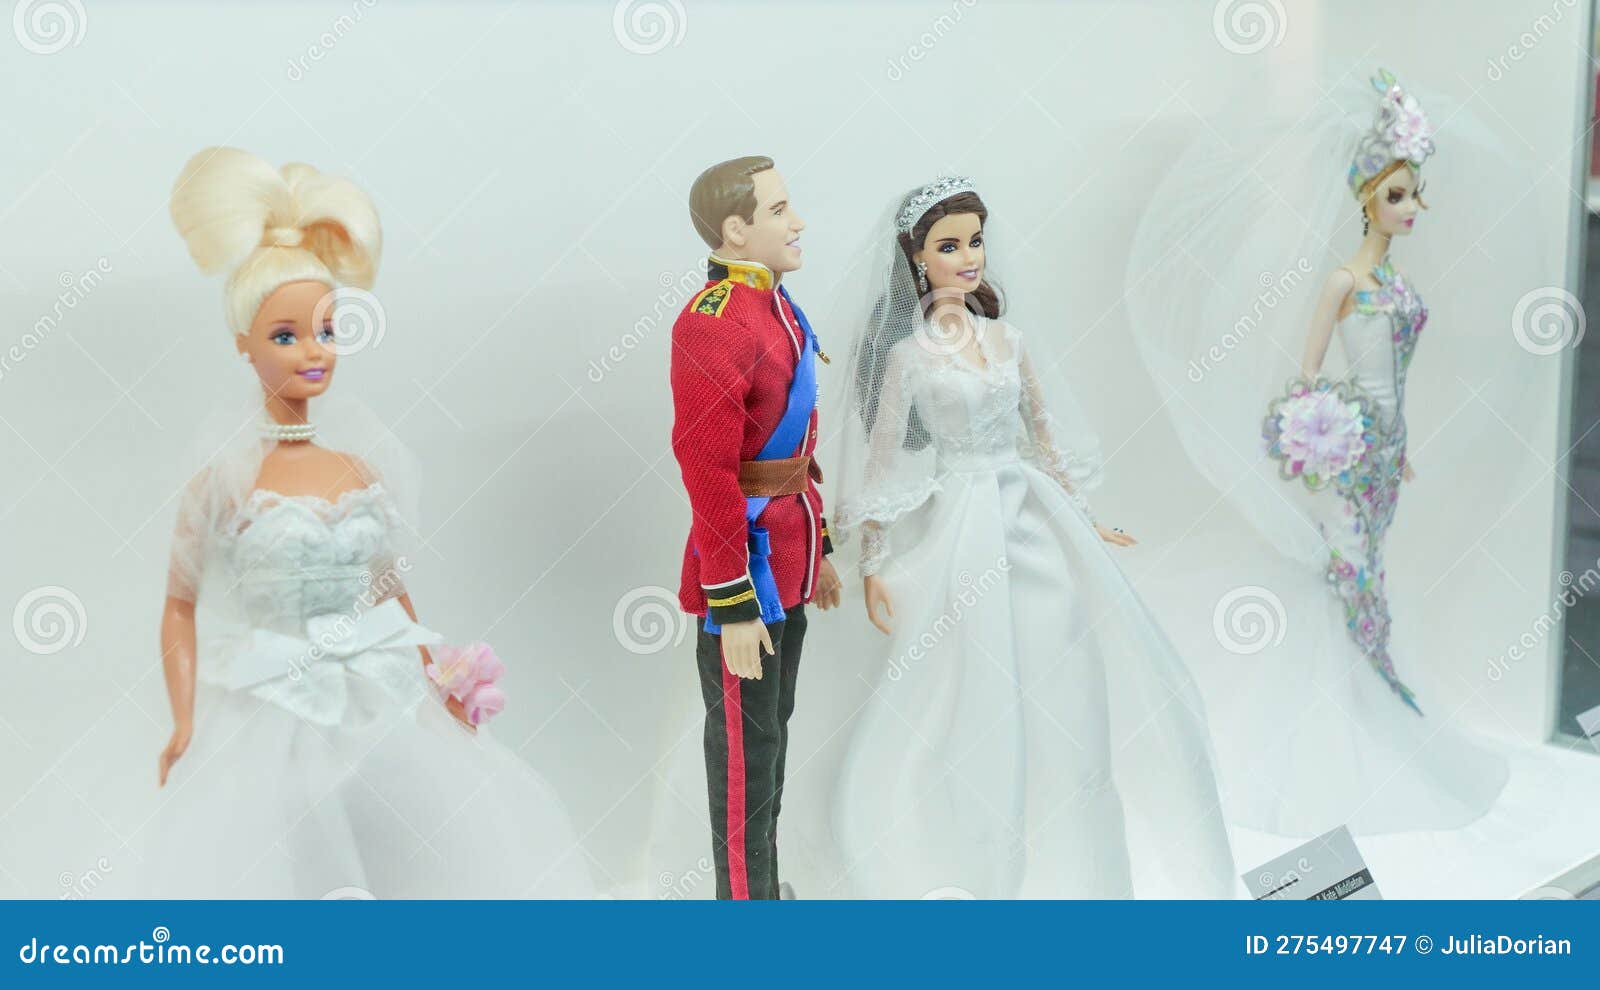 Exposición De Barbie Expo En El Centro De Mall Les Cours Royal Ropa Elegante De Historia. Príncipe William Y Kate Middle Fotografía - Imagen de cultura, expo: 275497747